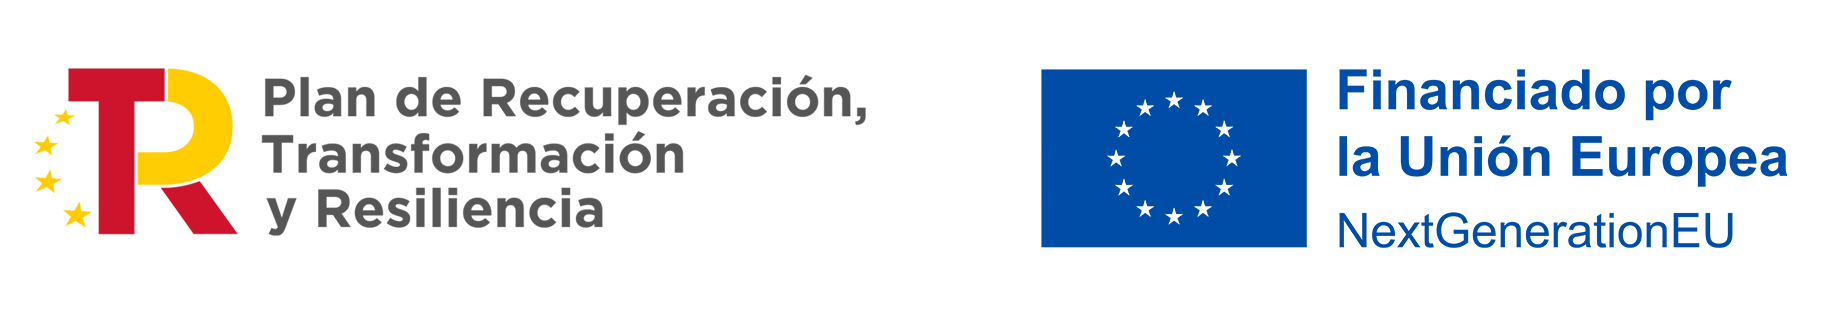 Imagen del logo de Red.es y la bandera de la unión Europea.